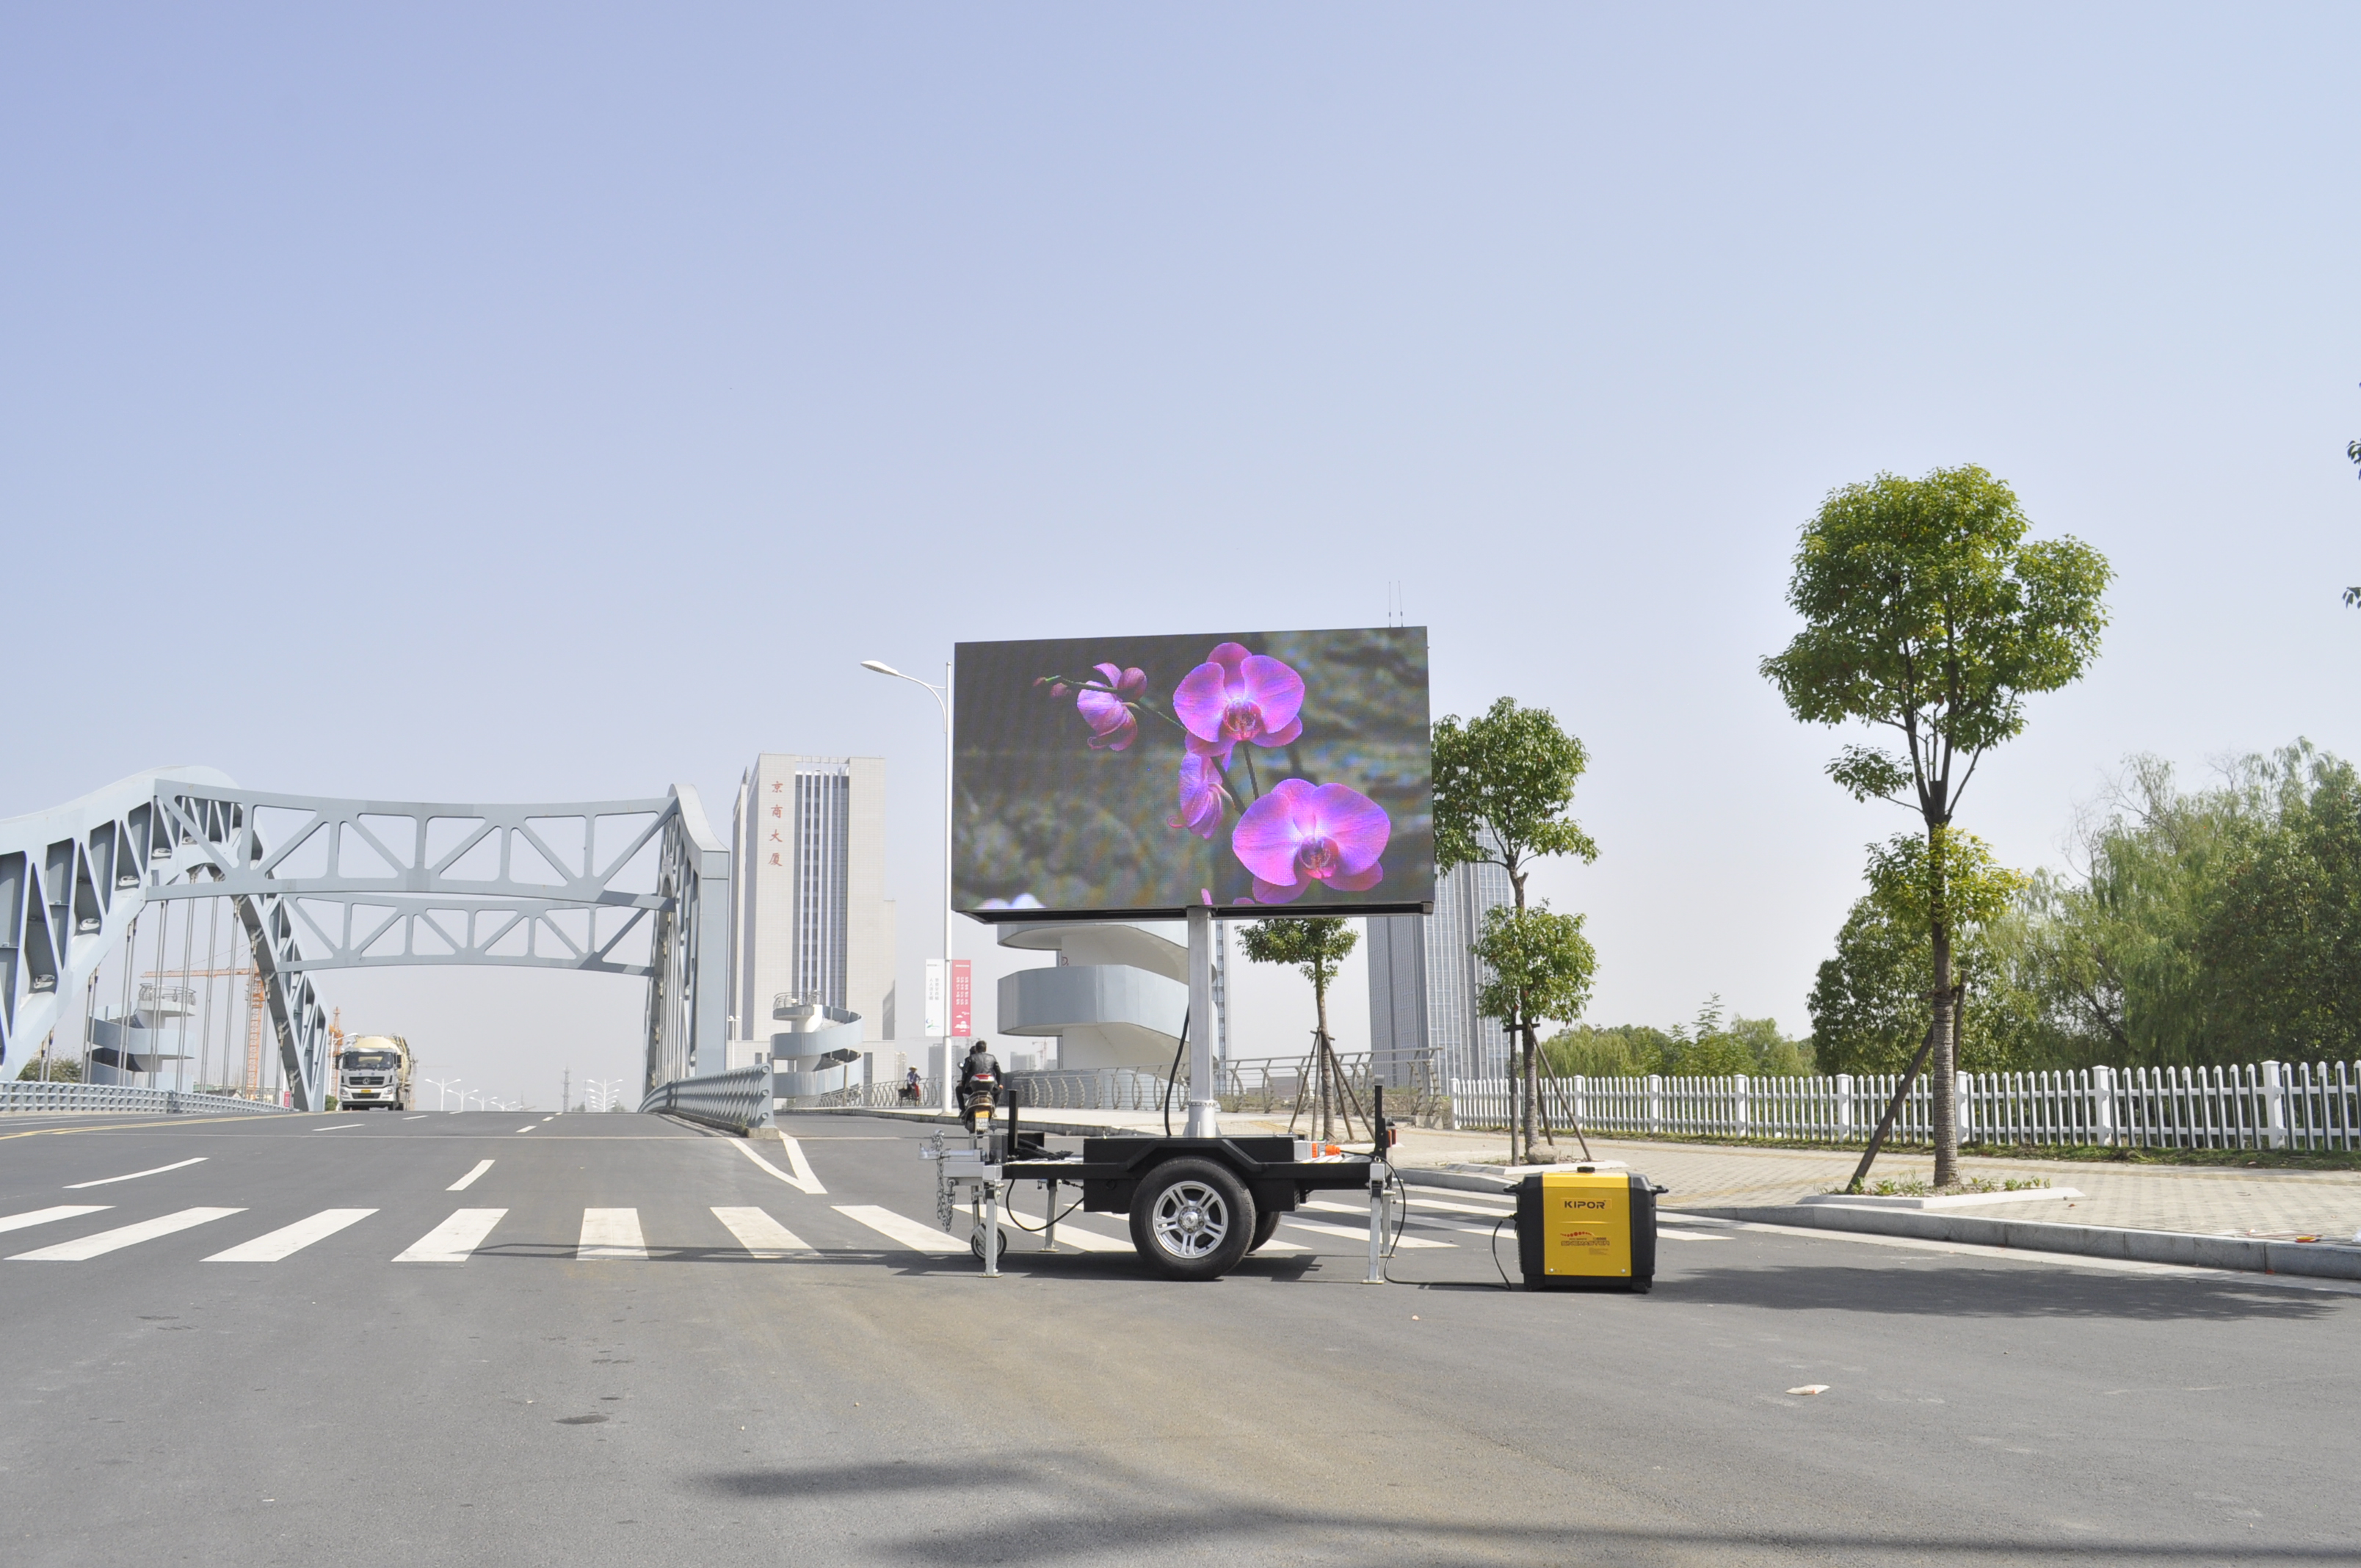 gvidita ekrano reklamanta subĉielajn kamionojn